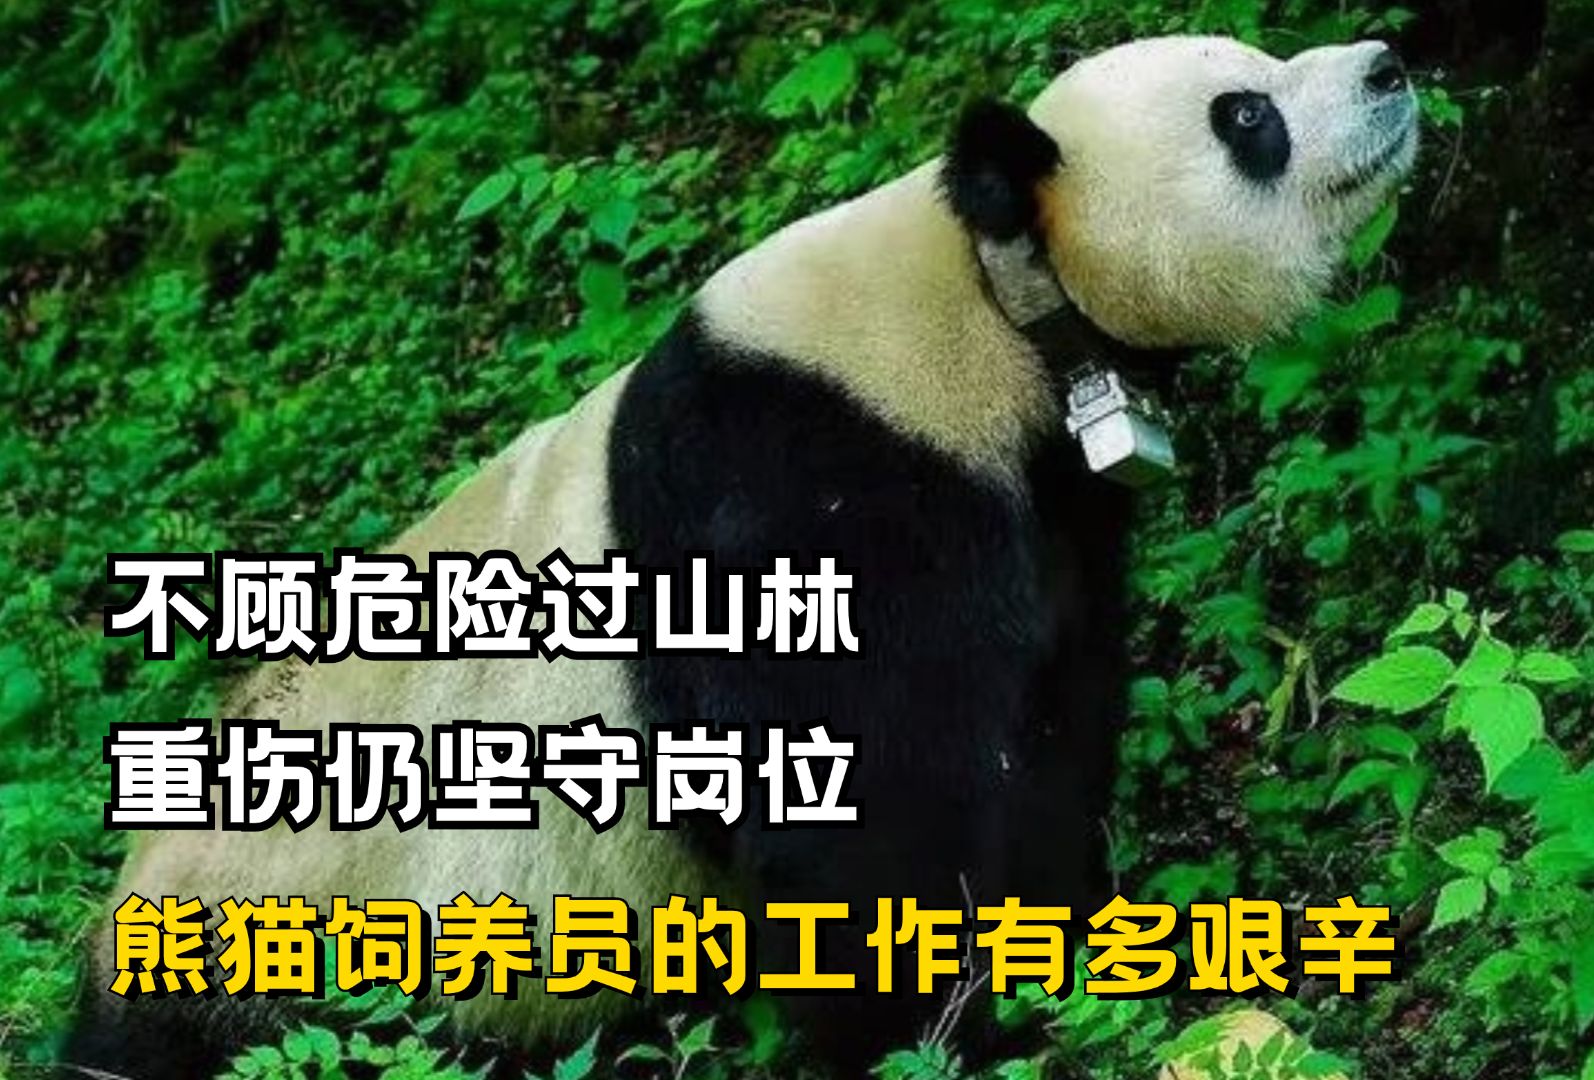 不顾危险过山林,重伤仍坚守岗位,熊猫饲养员的工作有多艰辛